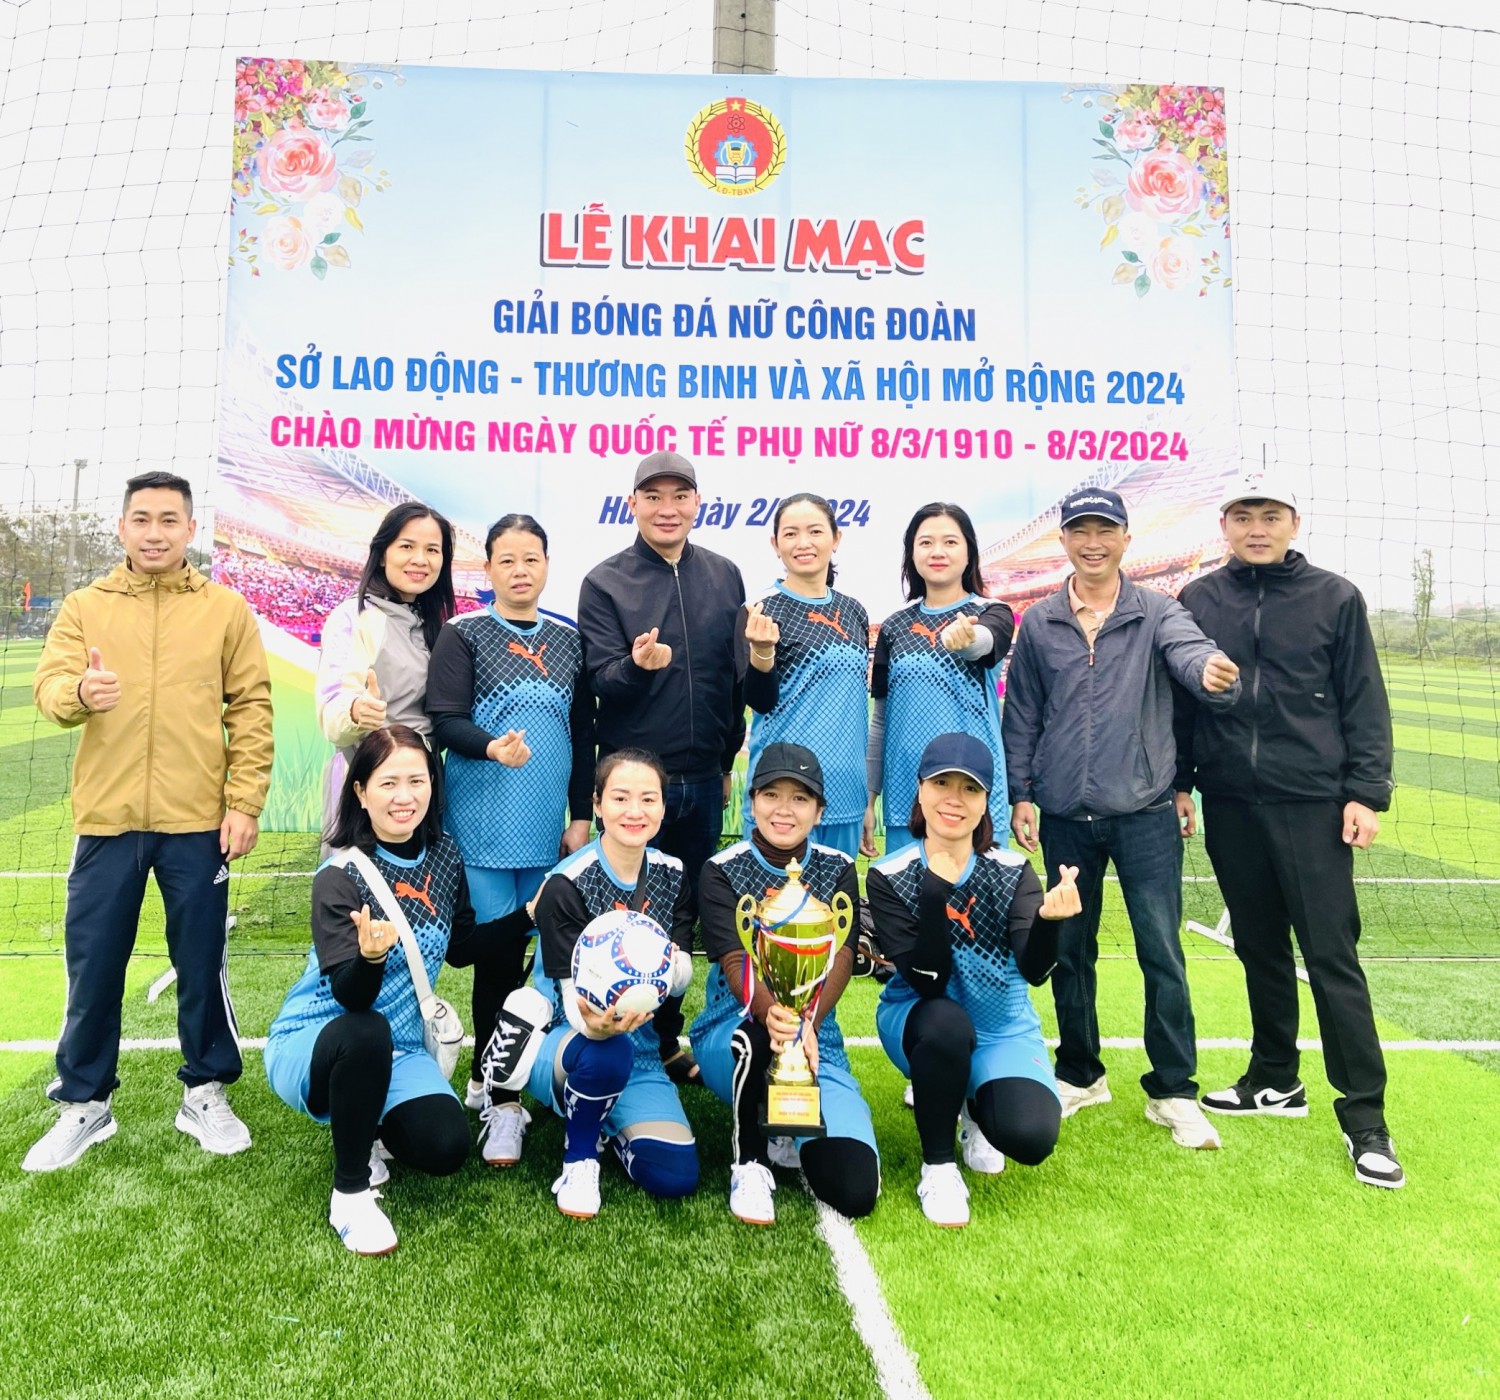 Đội bóng nữ Trung tâm đạt giải ba tại Giải bóng đá nữ Công đoàn Sở Lao động - Thương binh và Xã hội mở rộng năm 2024